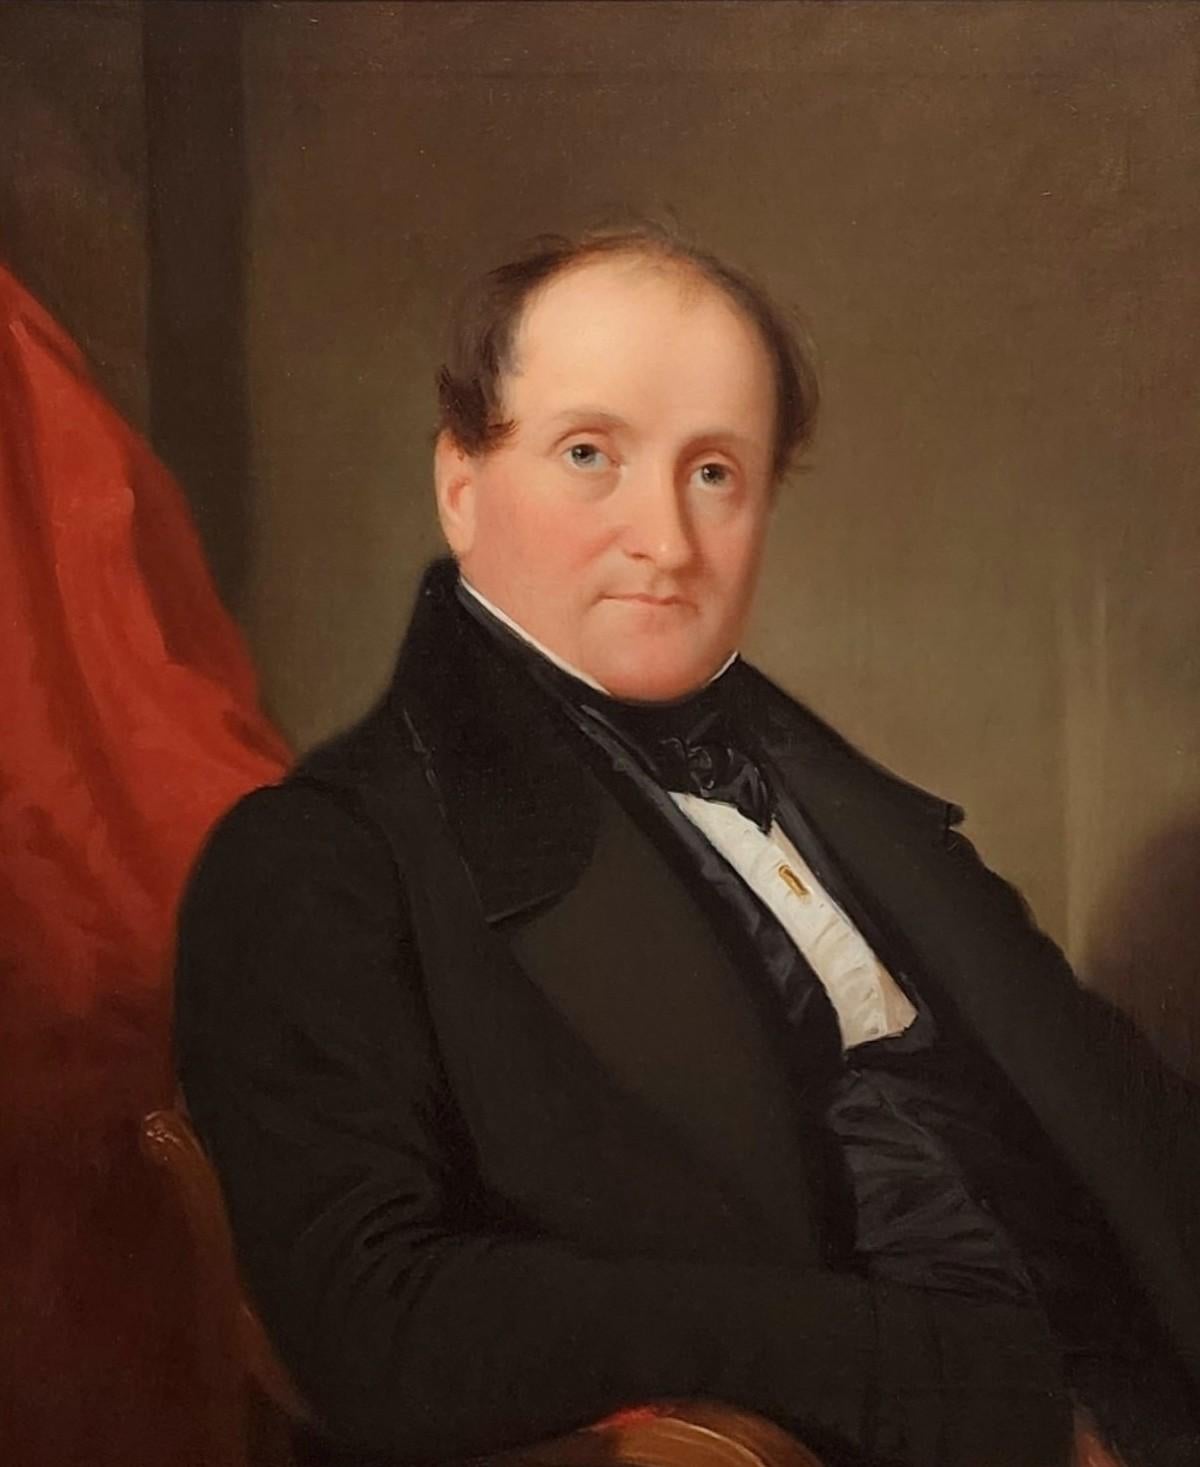 Porträt eines Gentleman, frühe amerikanische Porträtmalerei, 1830er Jahre Porträt eines Mannes – Painting von John F Francis